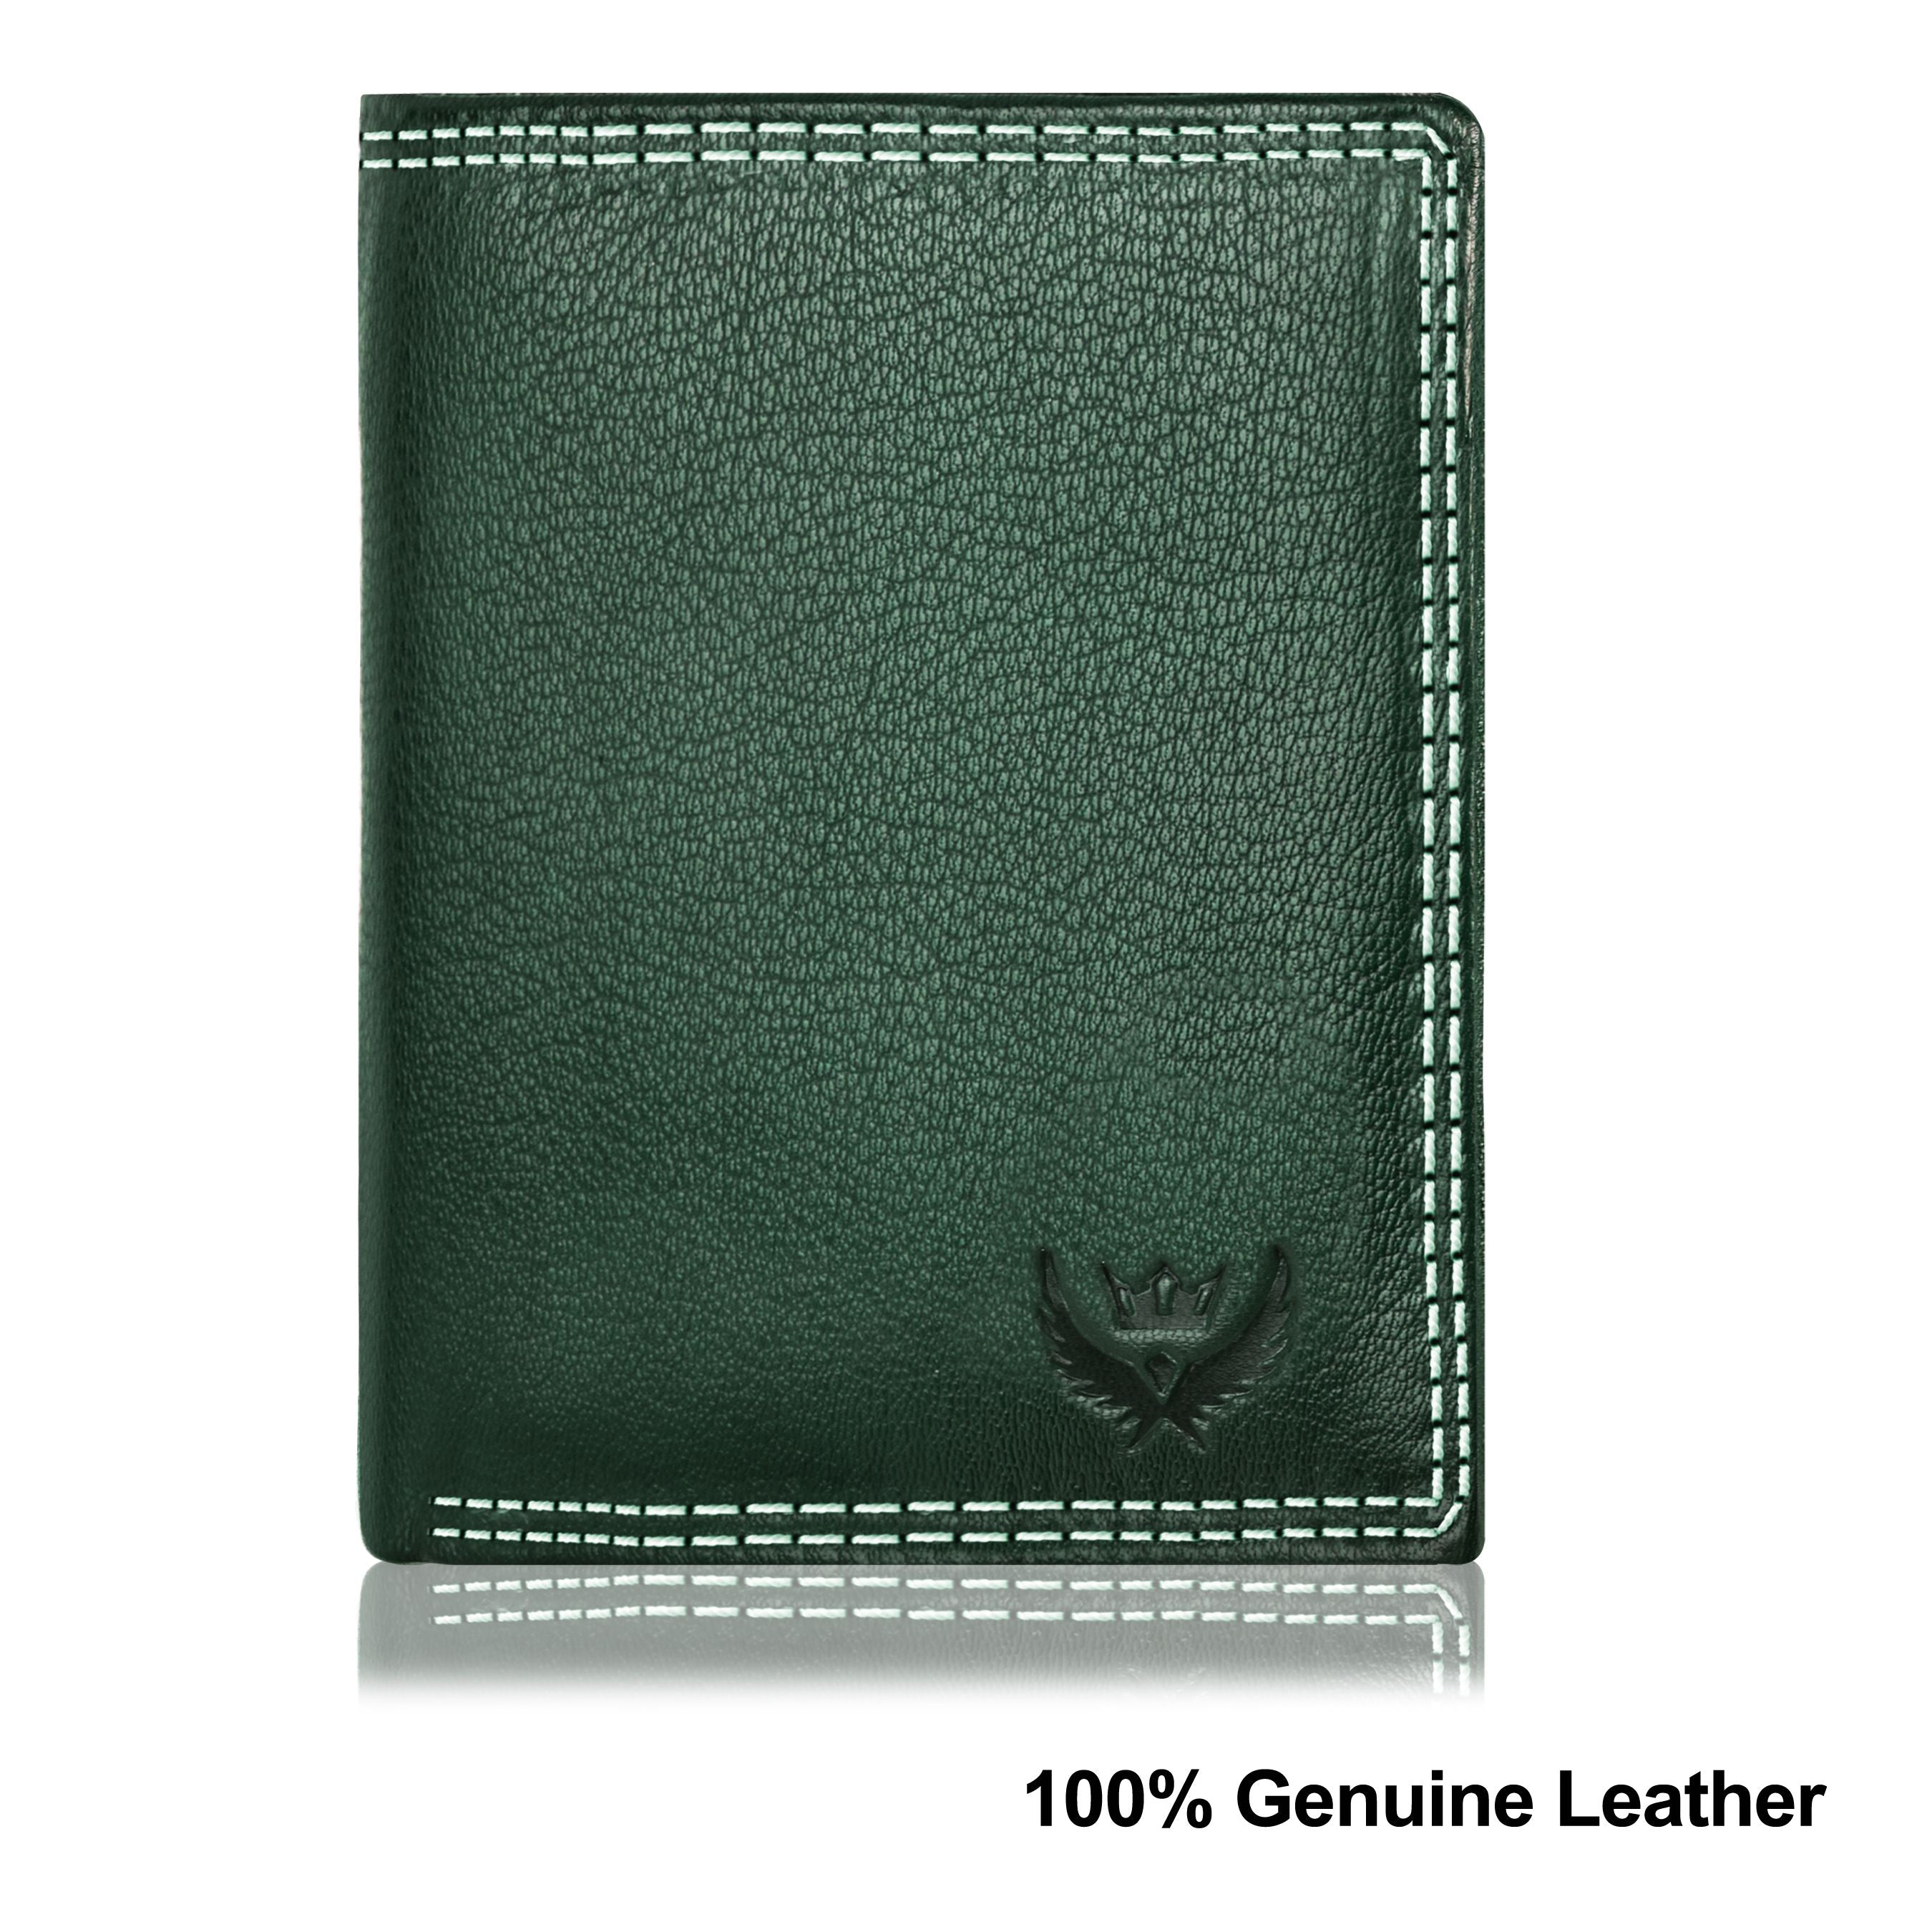 Lorenz Vintage Green Case Fold Style Genuine Leather RFID Blocking Large Capacity Unisex Wallet